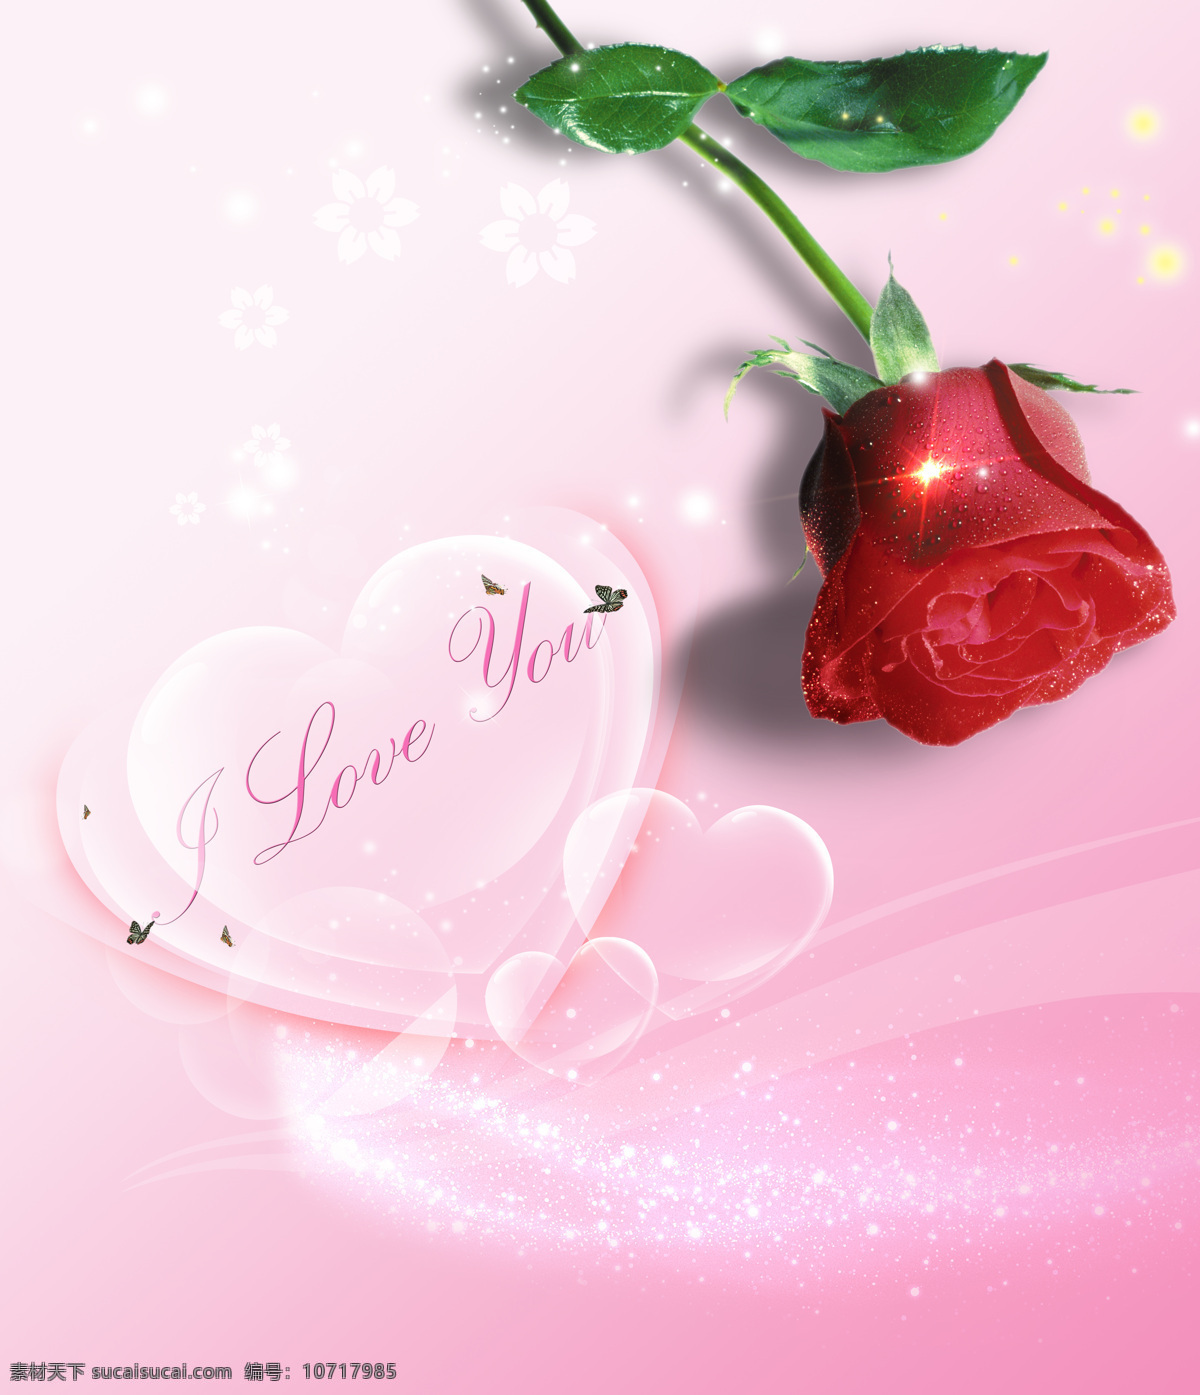 红玫瑰 love 水晶心 甜美爱情 家居装饰素材 无框画